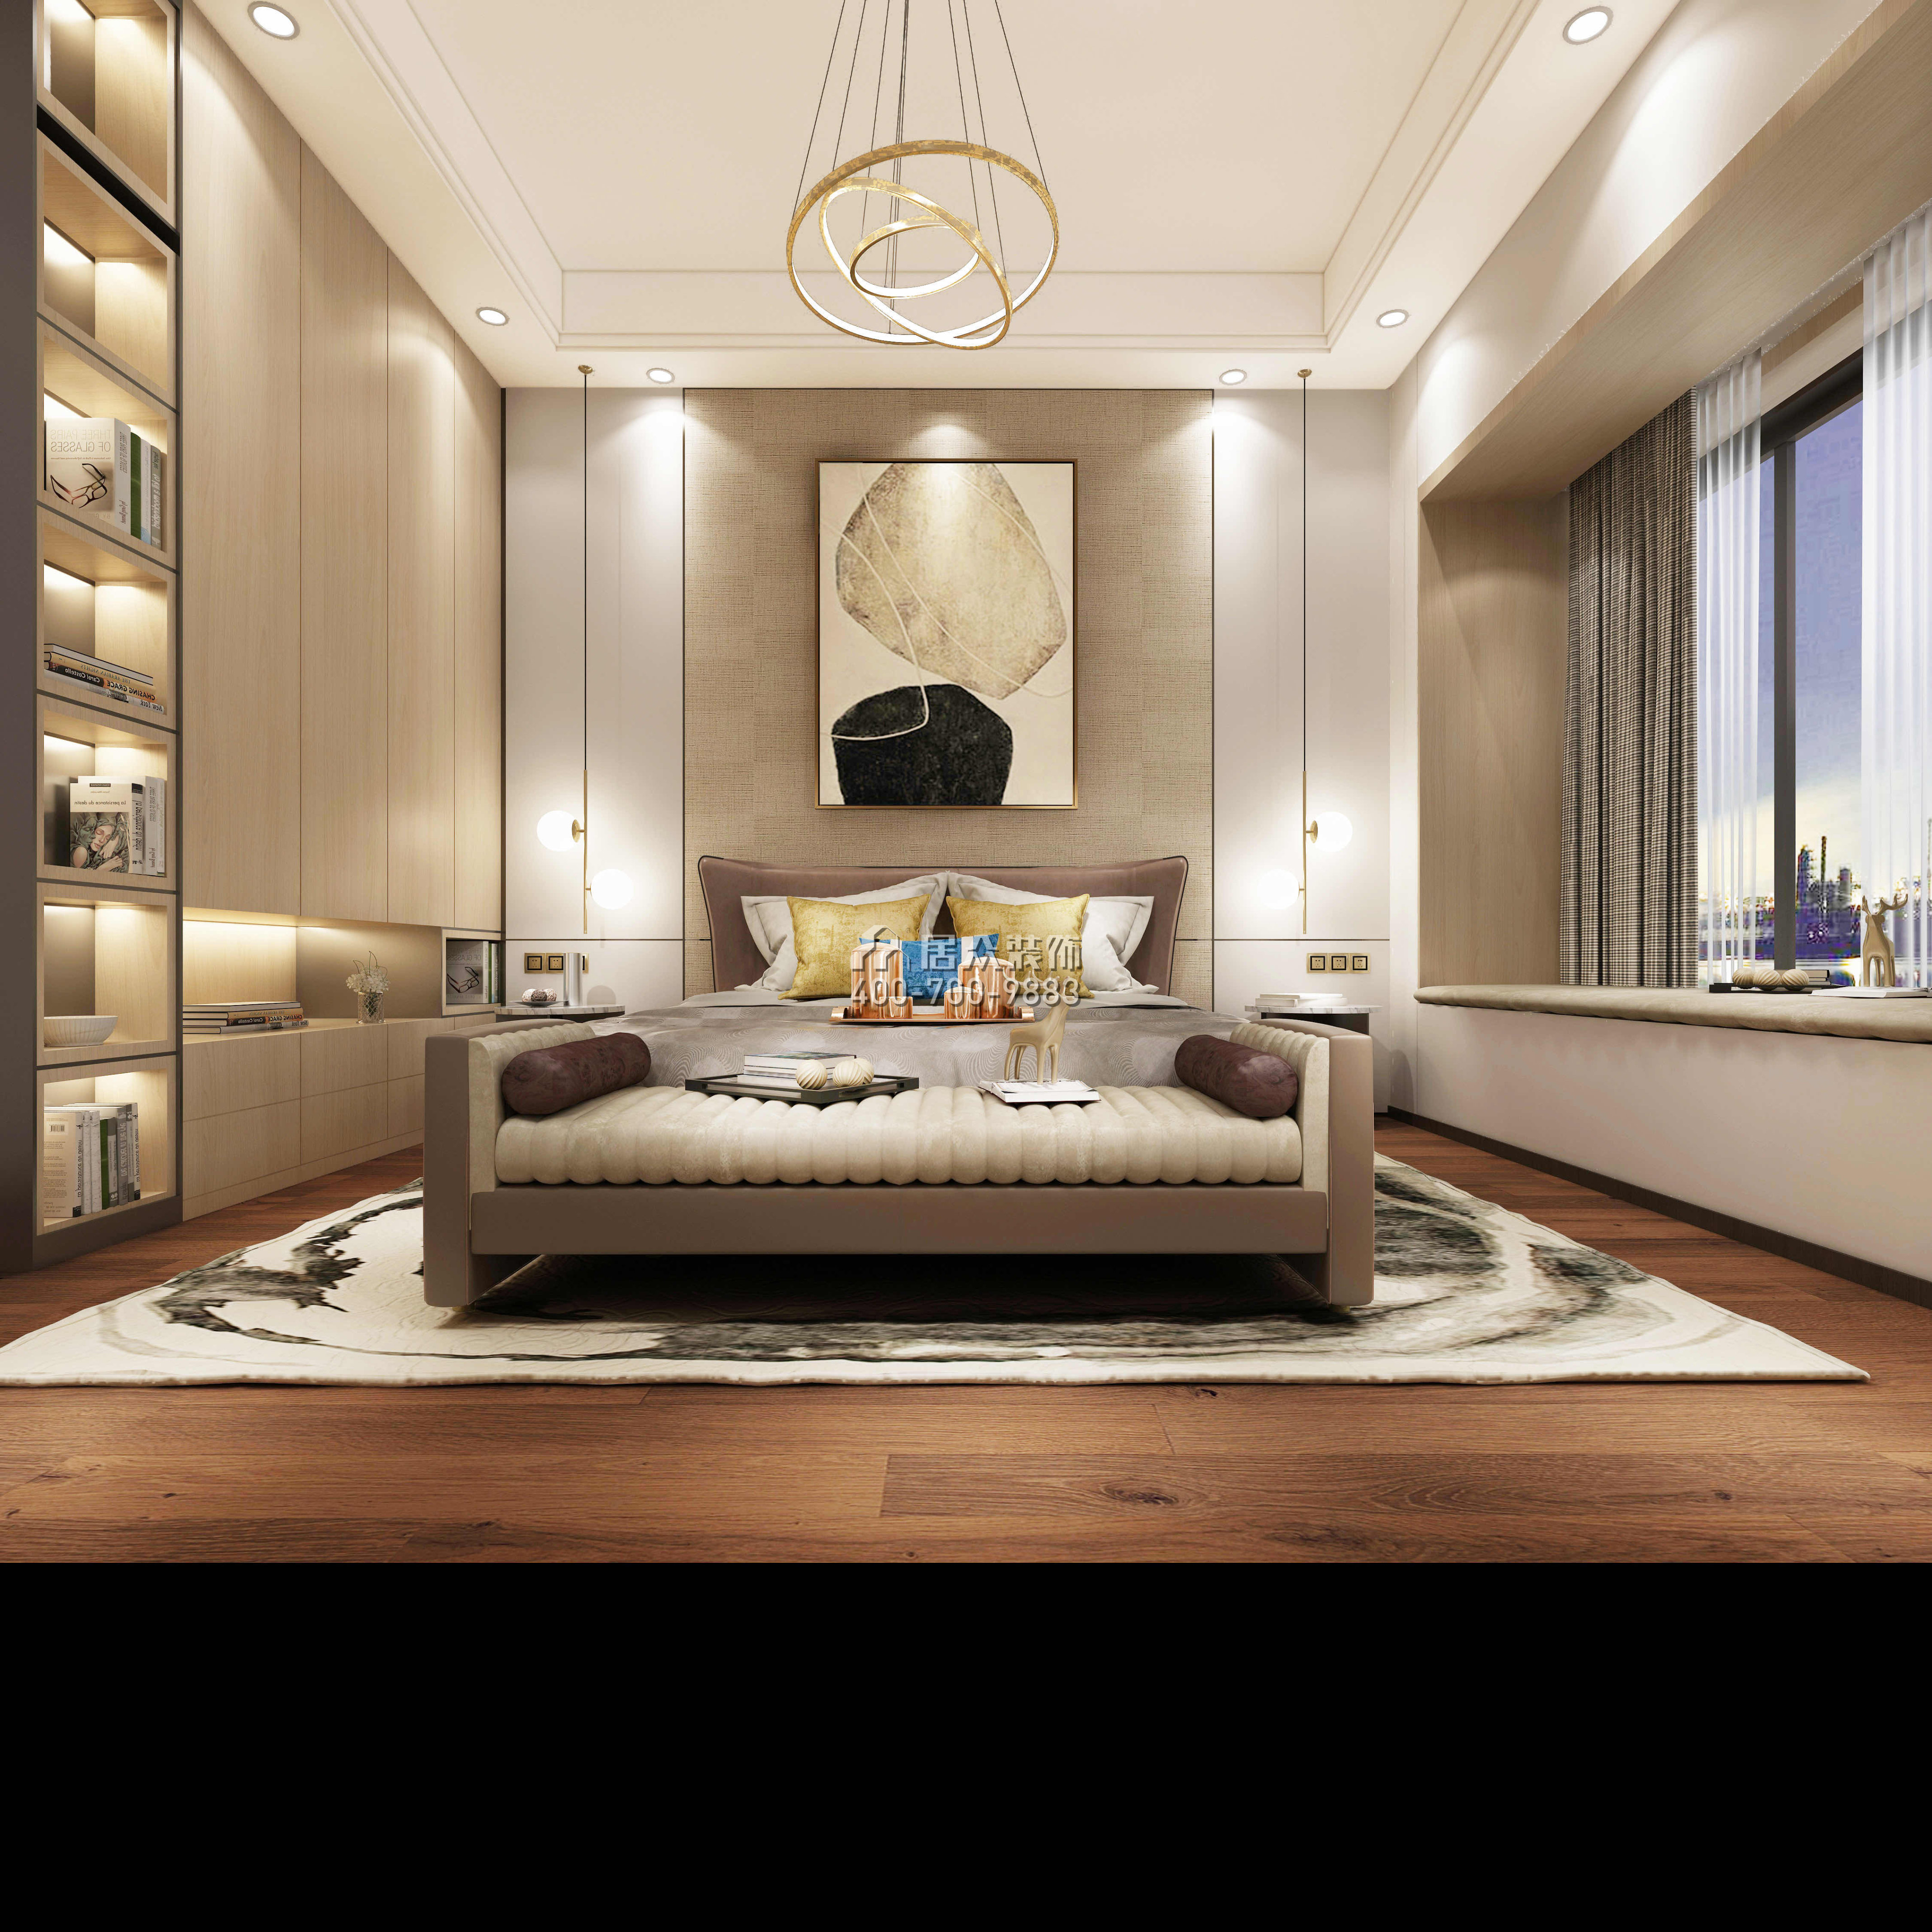 中海銀海灣500平方米現代簡約風格復式戶型臥室裝修效果圖